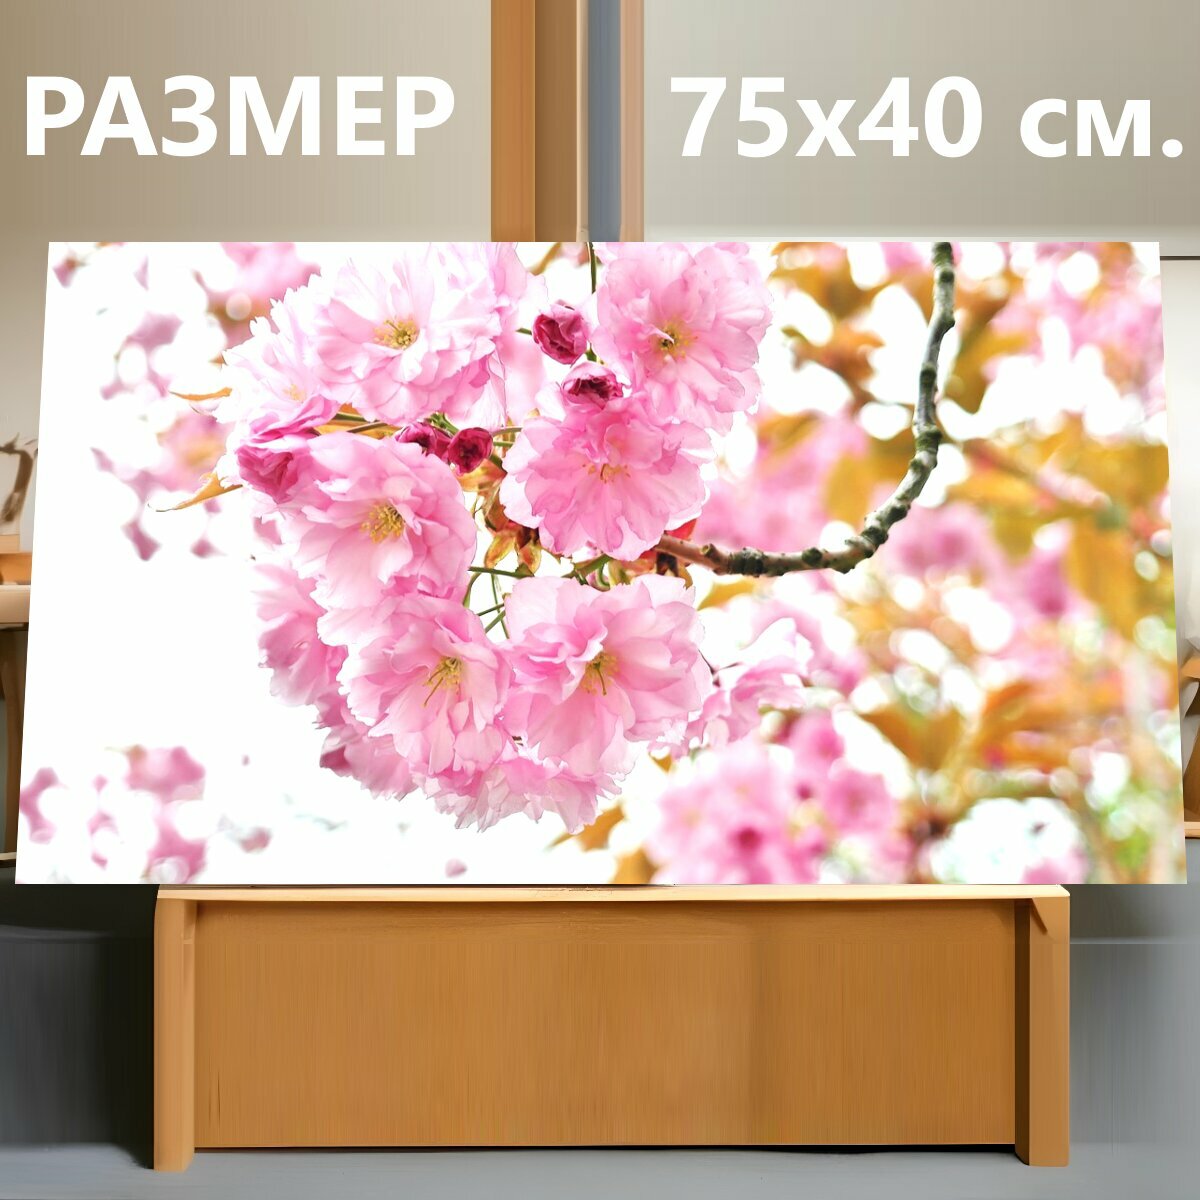 Картина на холсте "Вишневое дерево, вишня в цвету, цветочный зонтик" на подрамнике 75х40 см. для интерьера